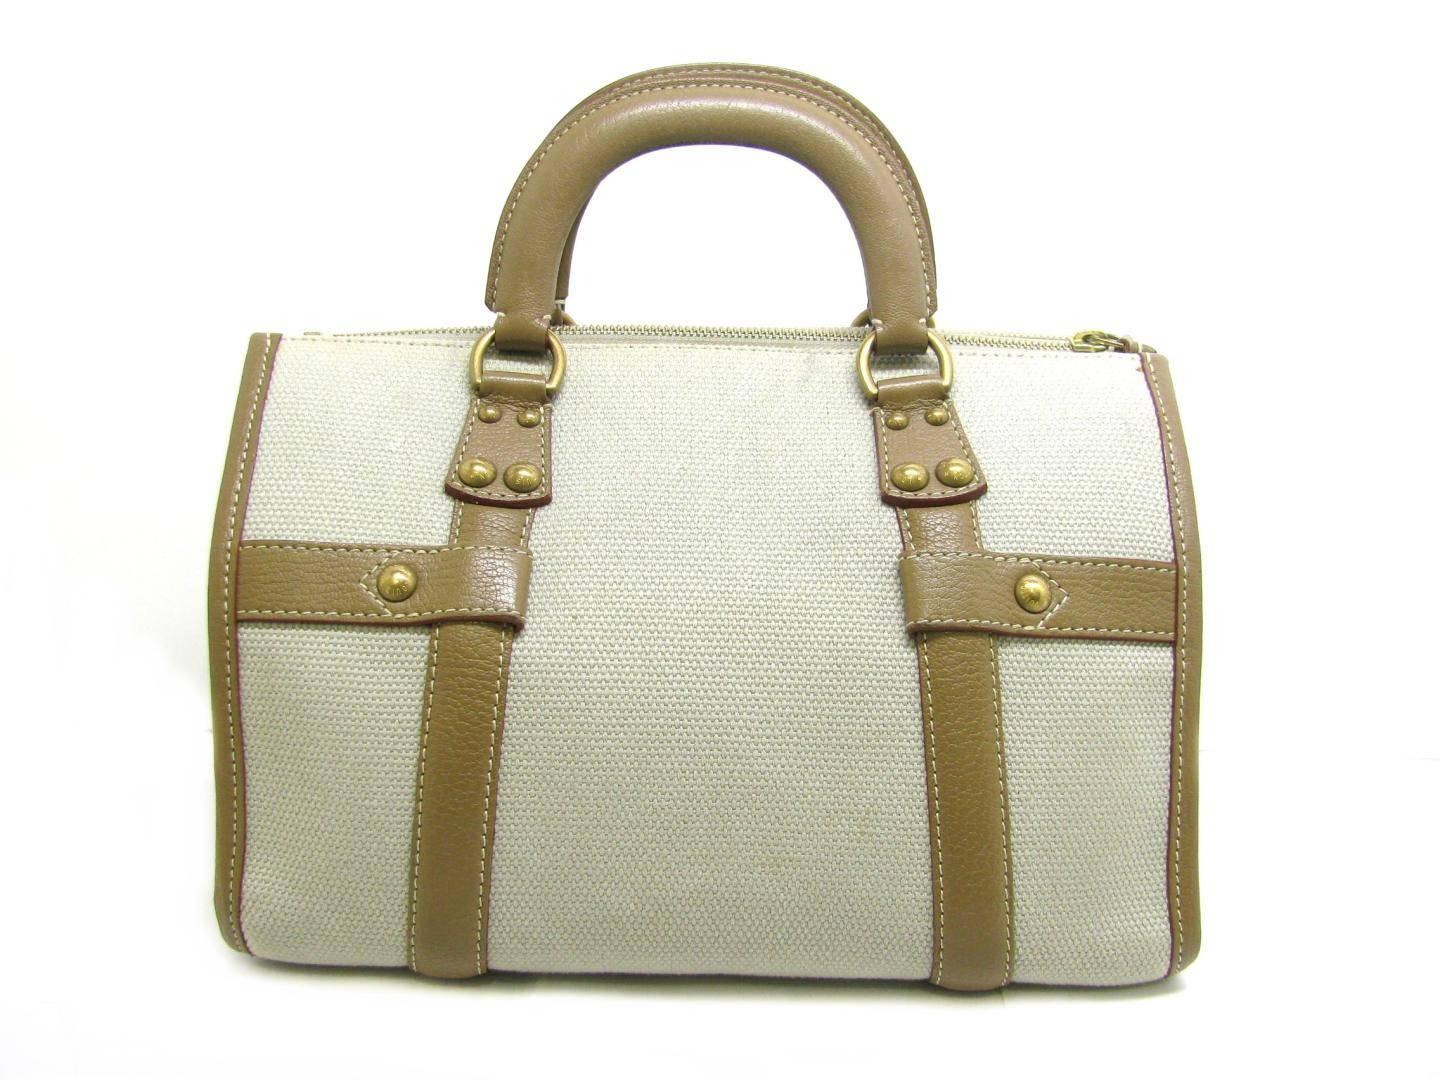 Women's Louis Vuitton Canvas Leather Cognac Speedy 30 Carryall Top Handle Satchel Bag